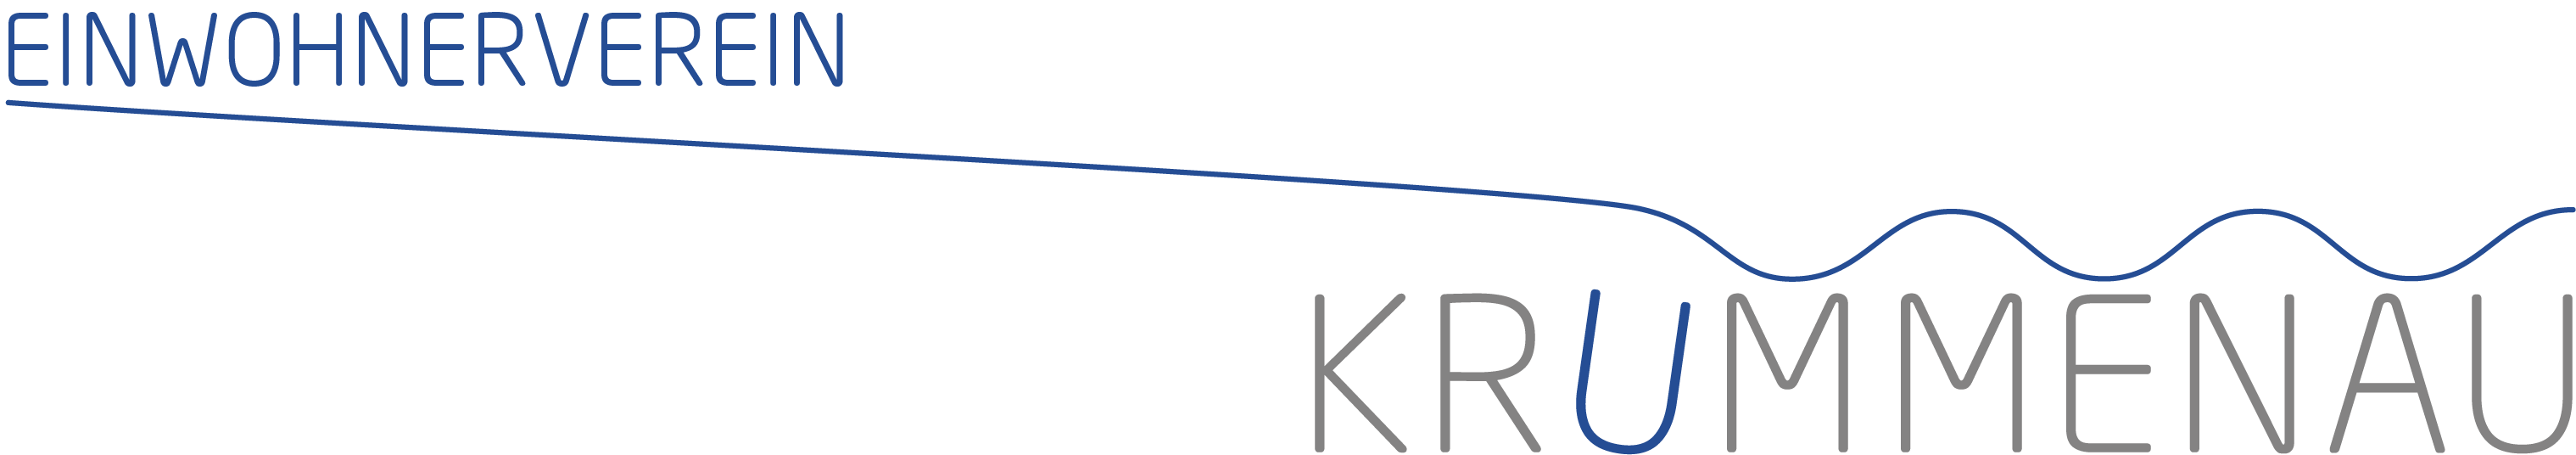 Logo - Einwohnerverein Krummenau